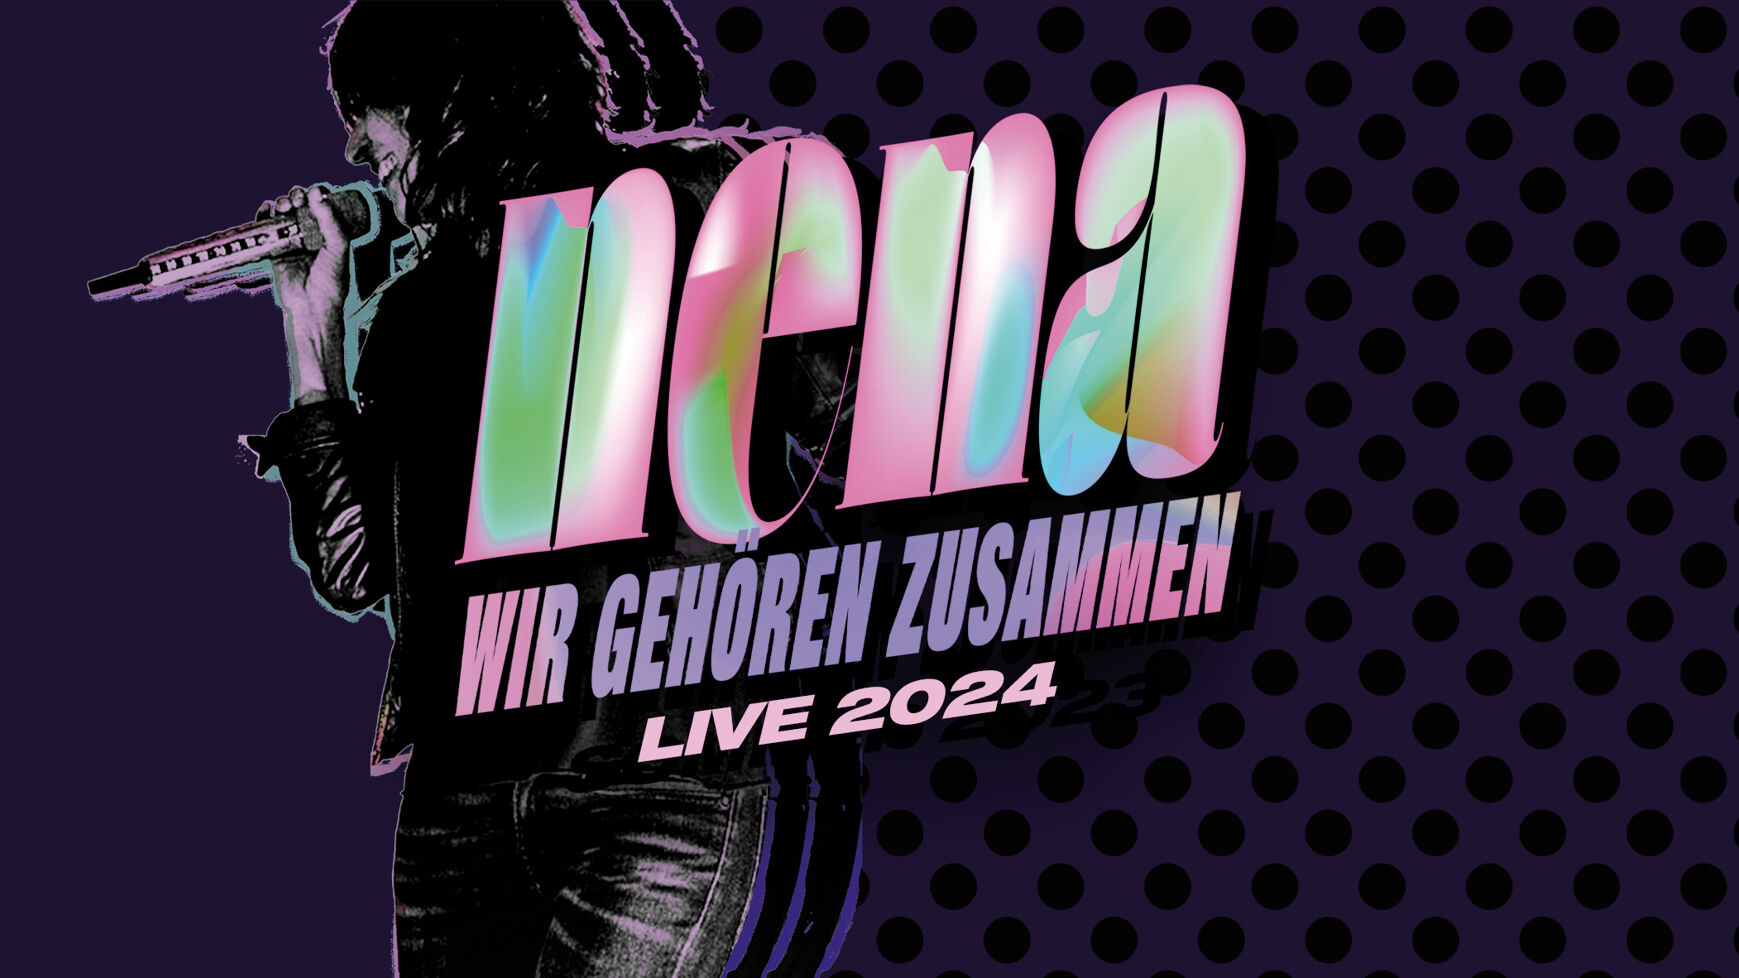 Eine Grafik zeigt NENA und kündigt ihre "Wir gehören zusammen Live 2024" Tour an.